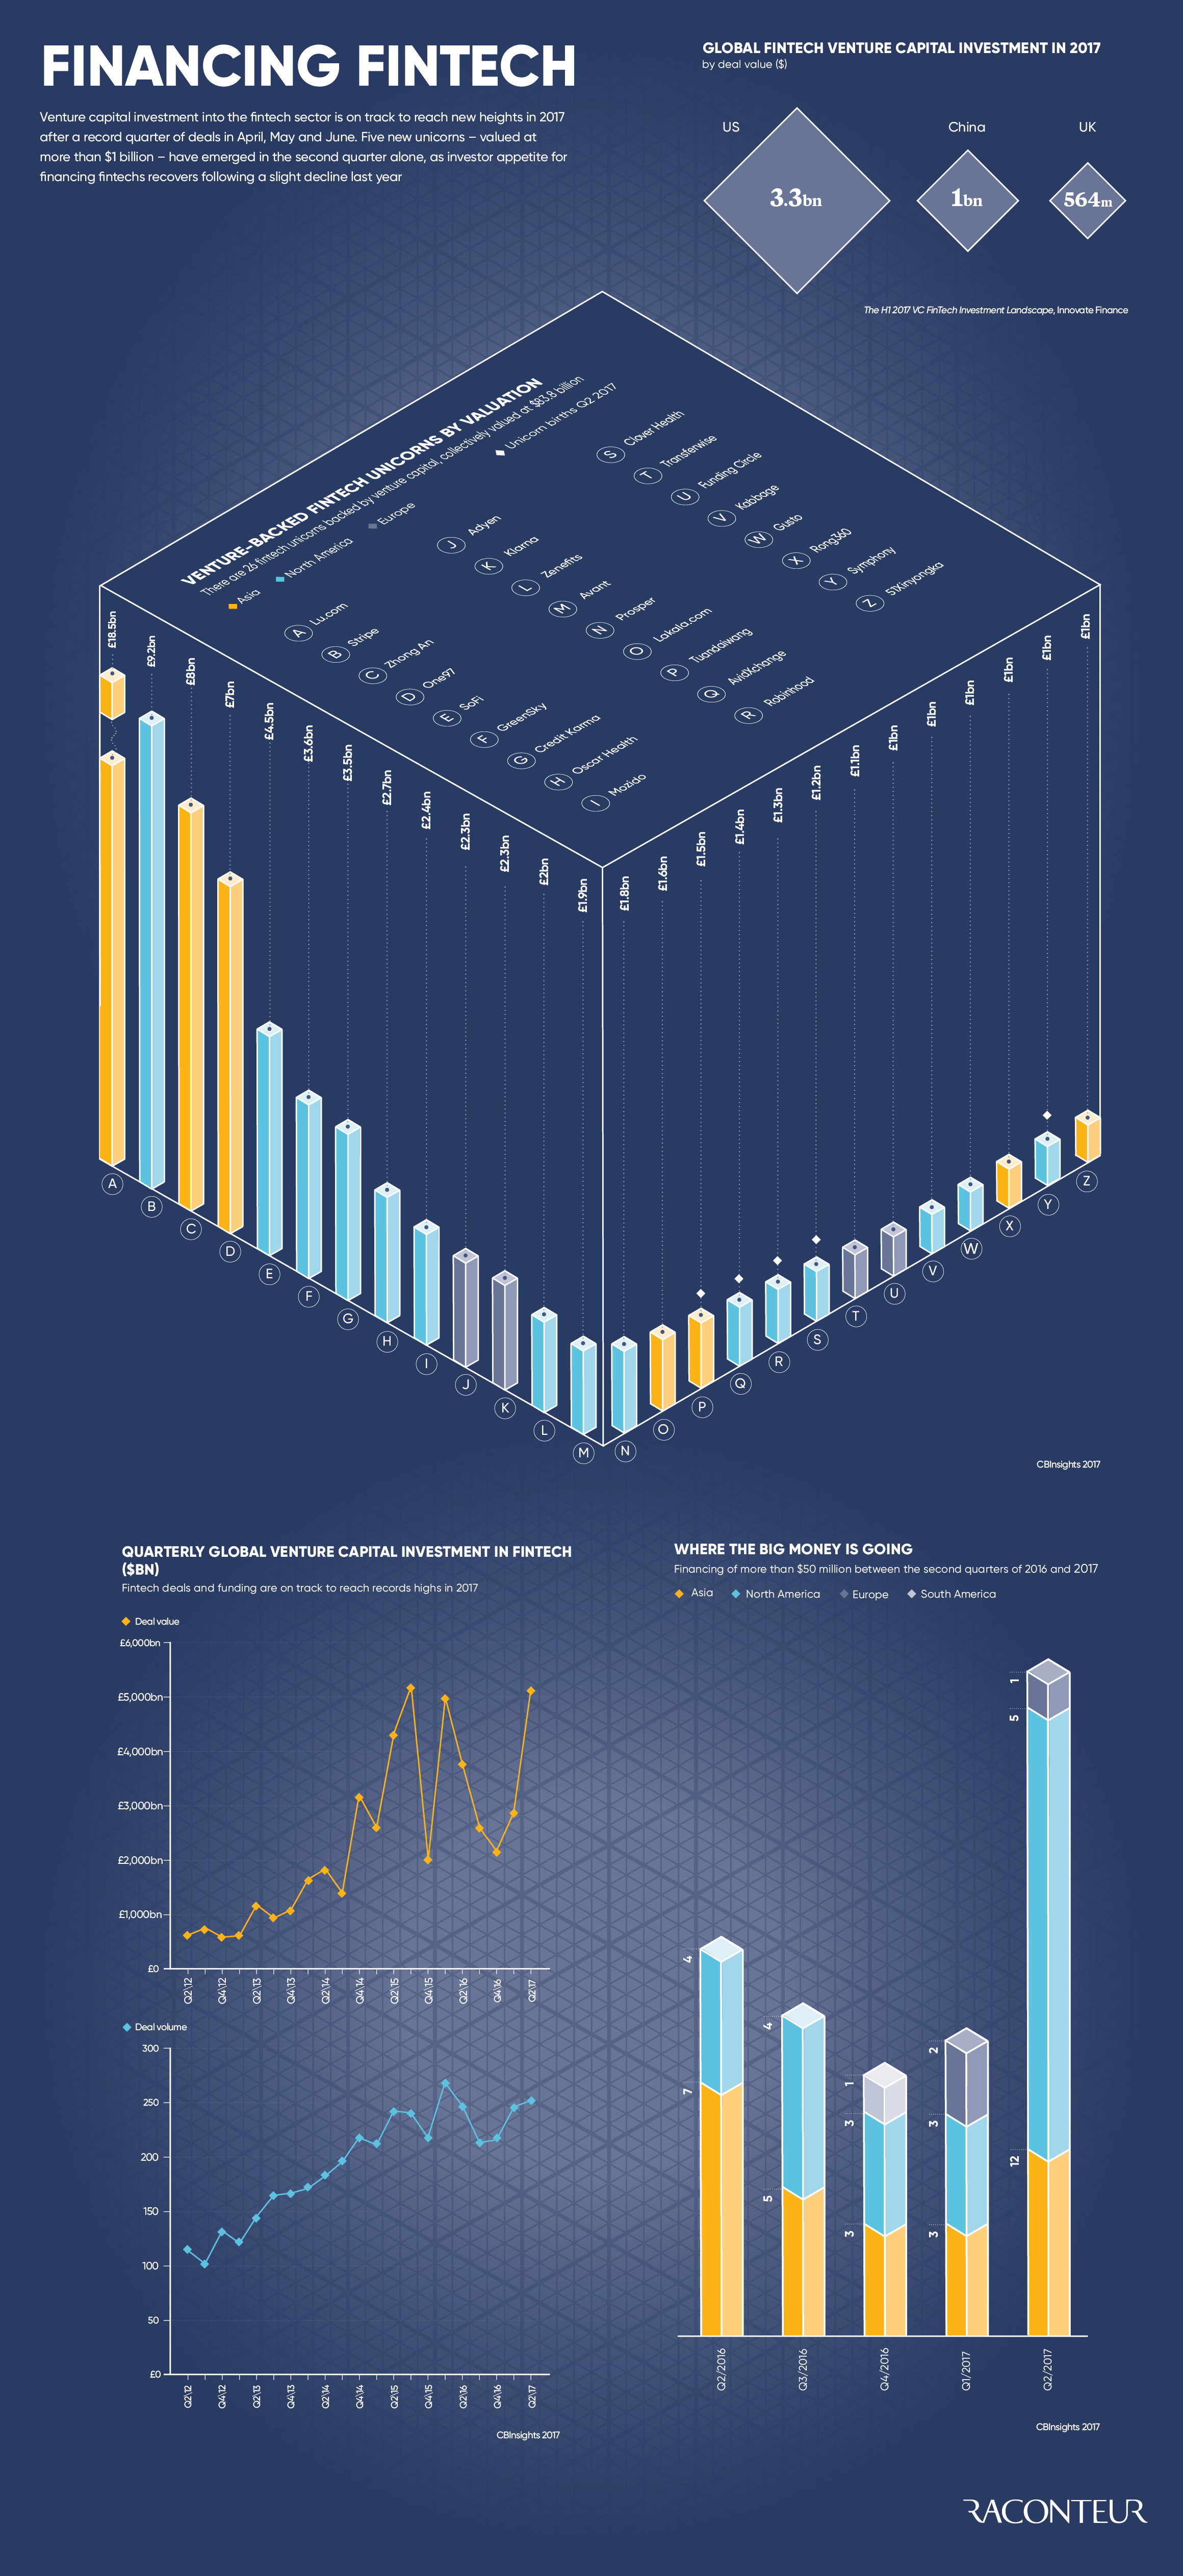 Financing fintech infographic